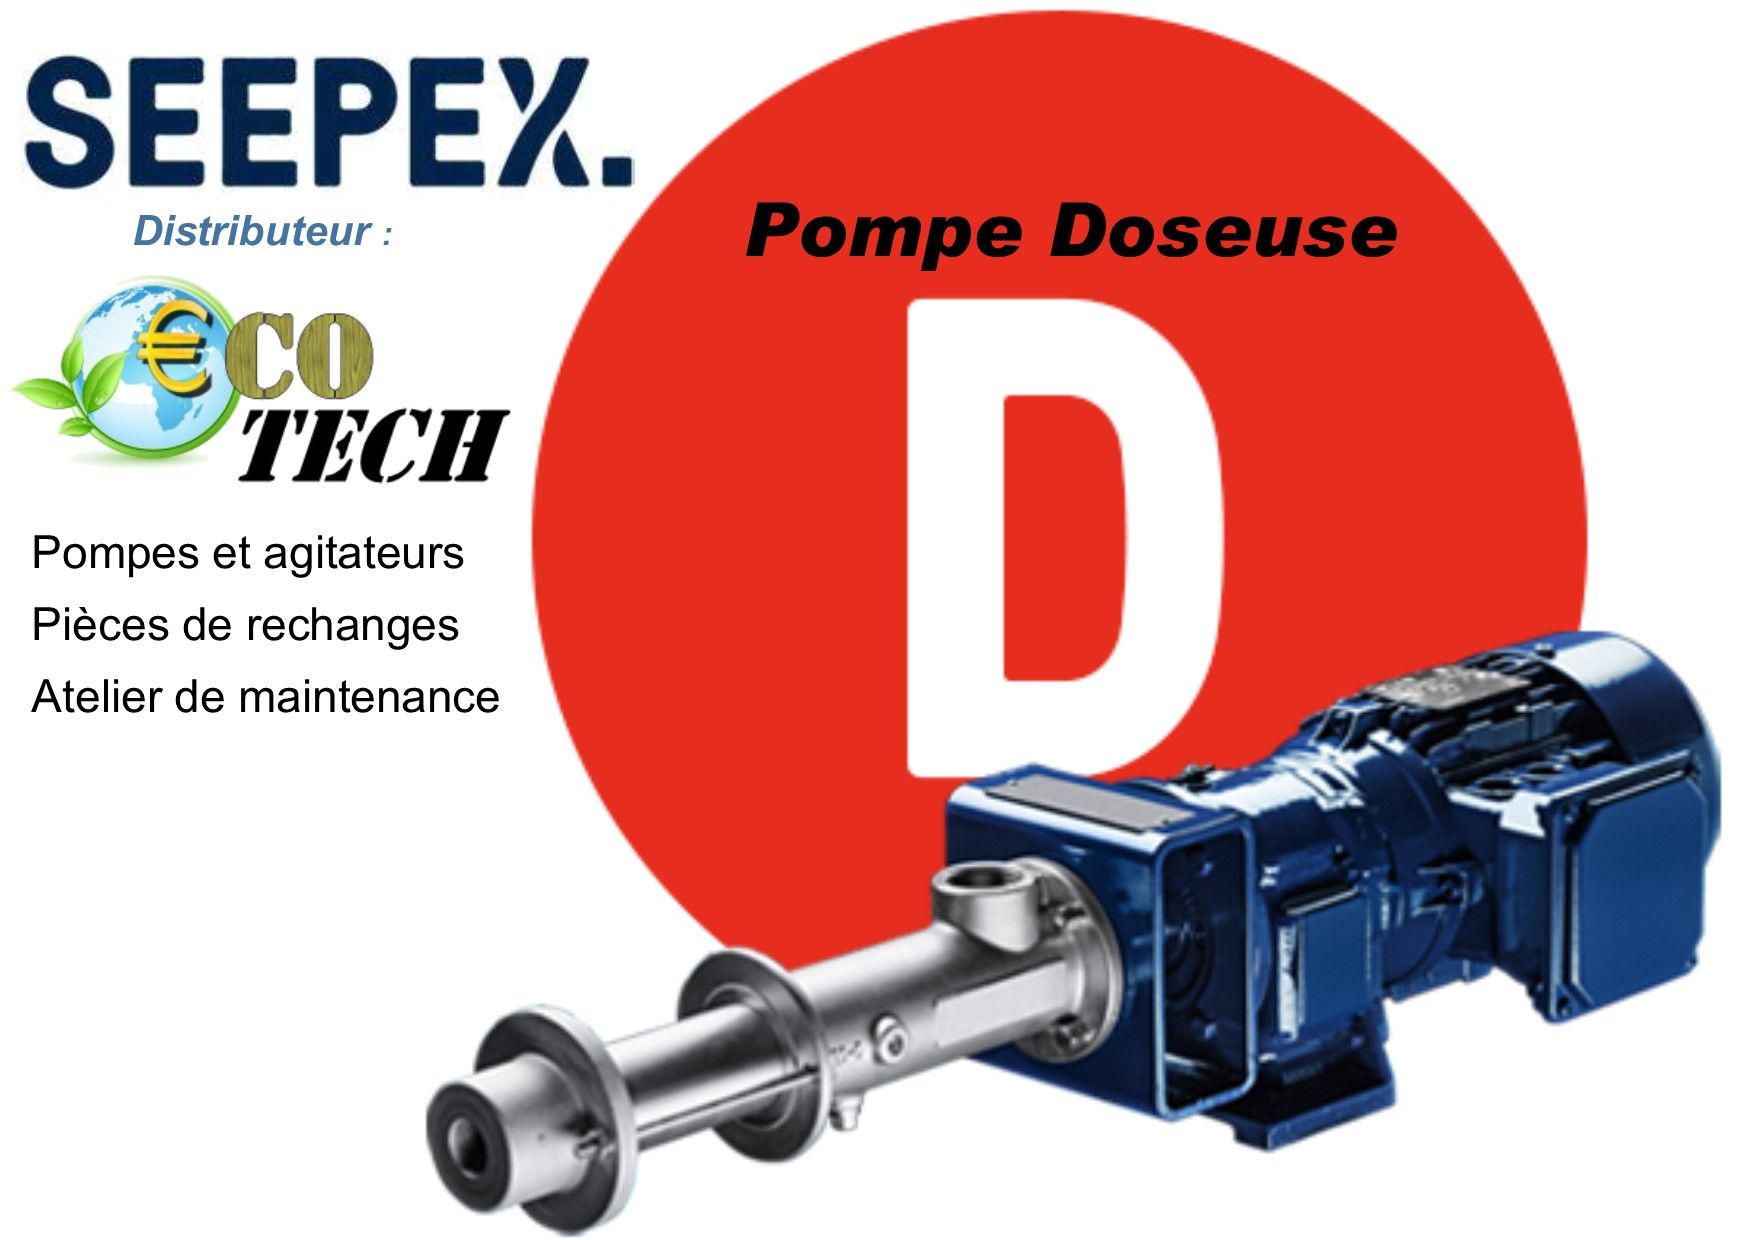 Pompe doseuse seepex série d distributeur eco-tech normandie nouvelle-aquitaine_0